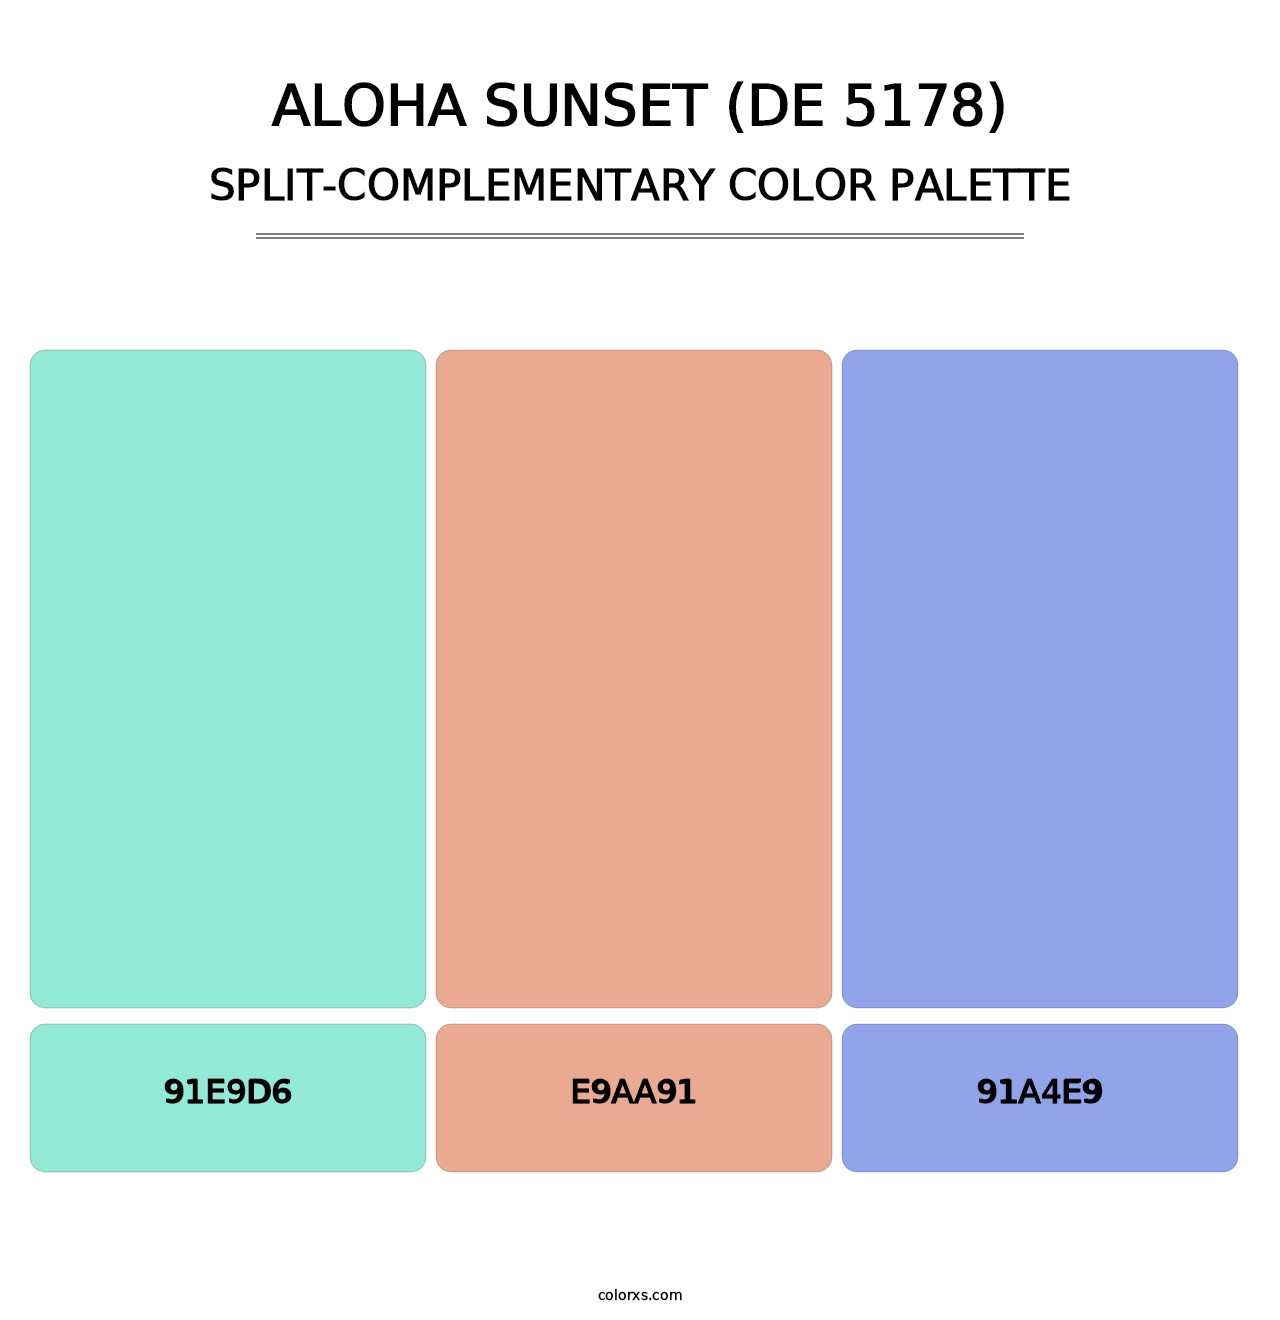 Aloha Sunset (DE 5178) - Split-Complementary Color Palette